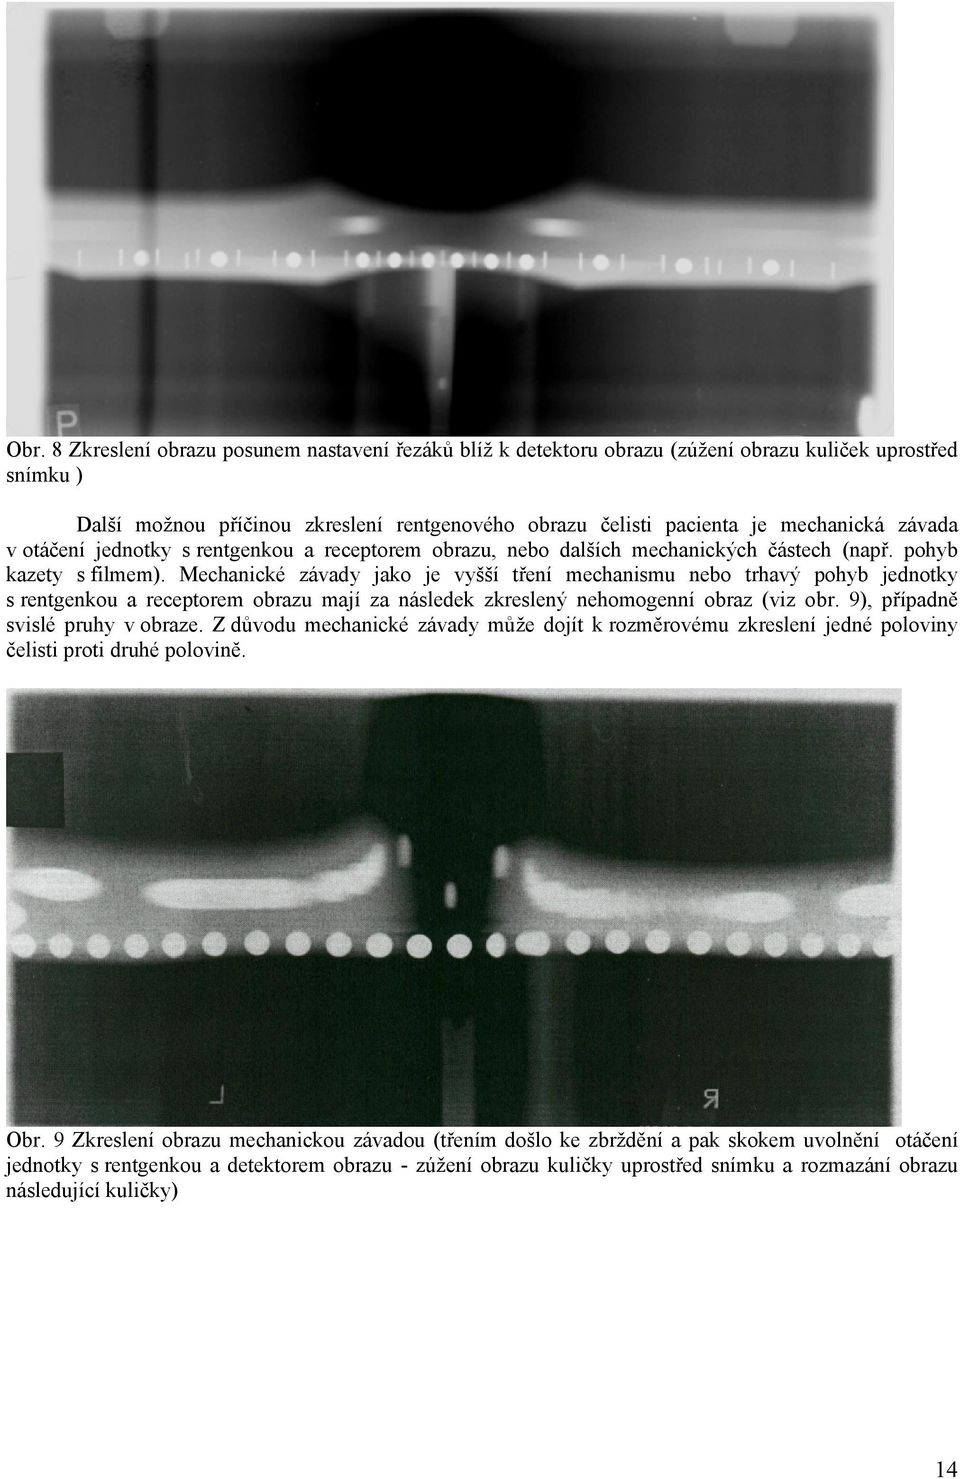 Mechanické závady jako je vyšší tření mechanismu nebo trhavý pohyb jednotky s rentgenkou a receptorem obrazu mají za následek zkreslený nehomogenní obraz (viz obr. 9), případně svislé pruhy v obraze.